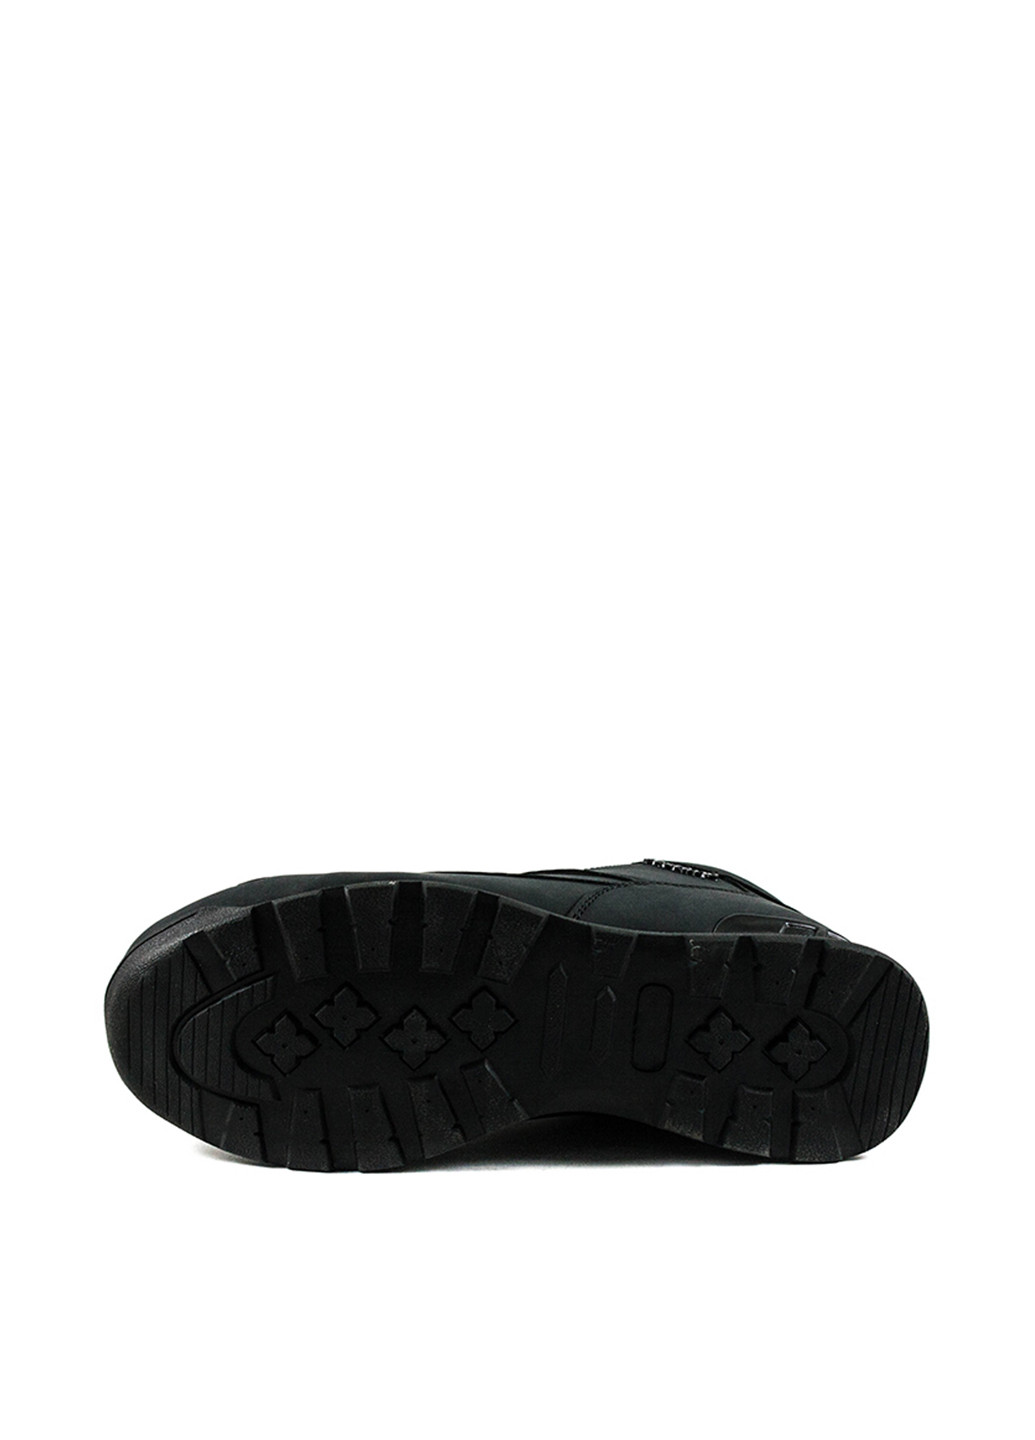 Черные зимние ботинки тимберленды Restime